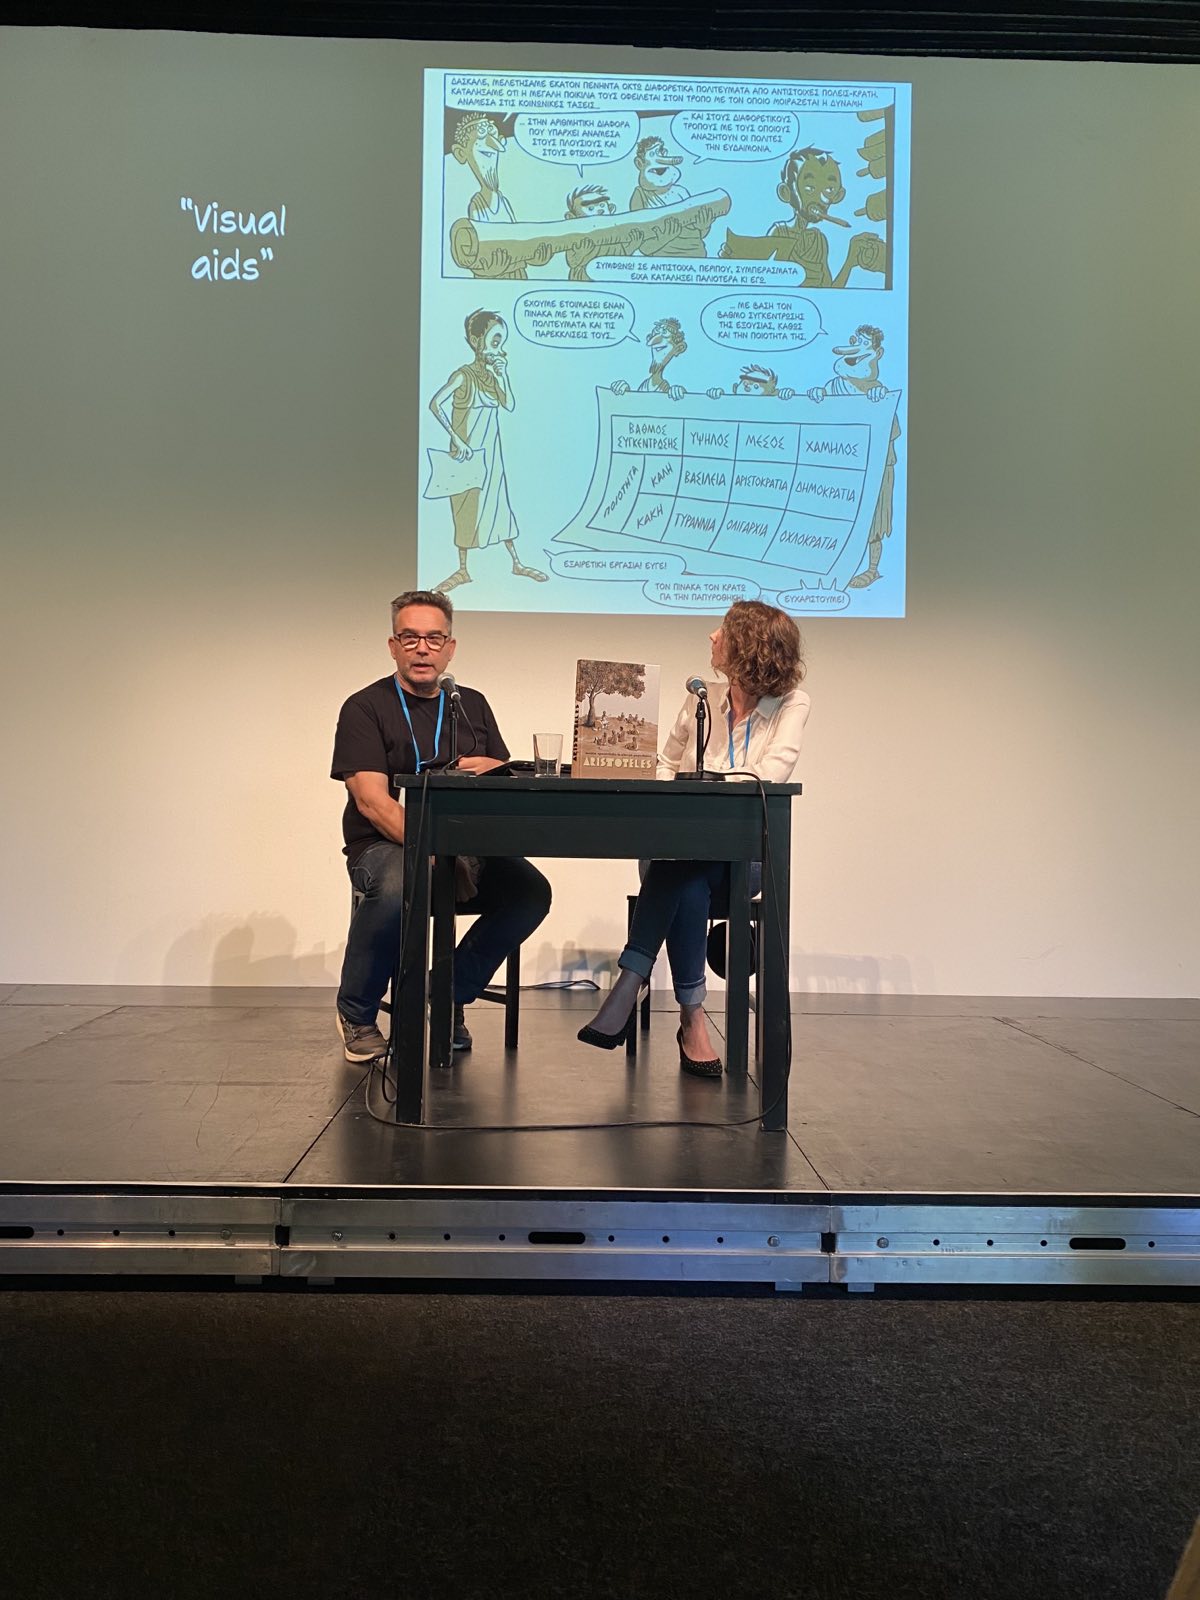 Ο Αλέκος Παπαδάτος και Lilian Pithan στην παρουσίαση του βιβλίου «Αριστοτέλης» των Τάσου Αποστολίδη και Αλέκου Παπαδάτου στο Διεθνές Φεστιβάλ Λογοτεχνίας Βερολίνου.